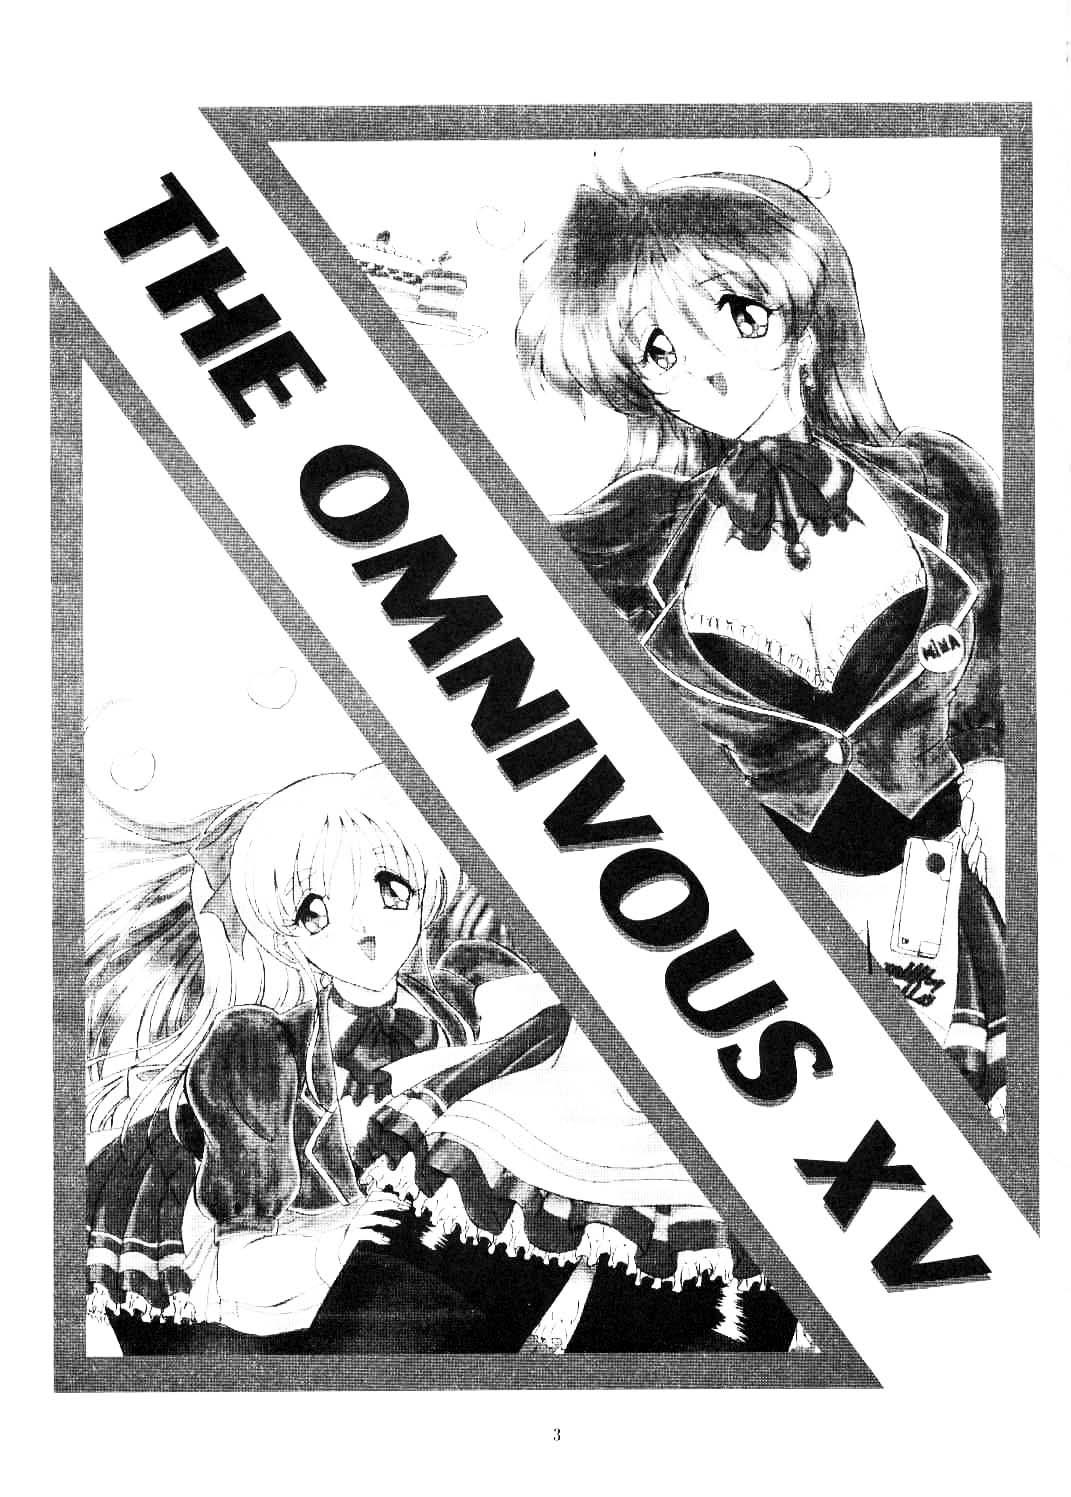 THE OMNIVOUS XV 2